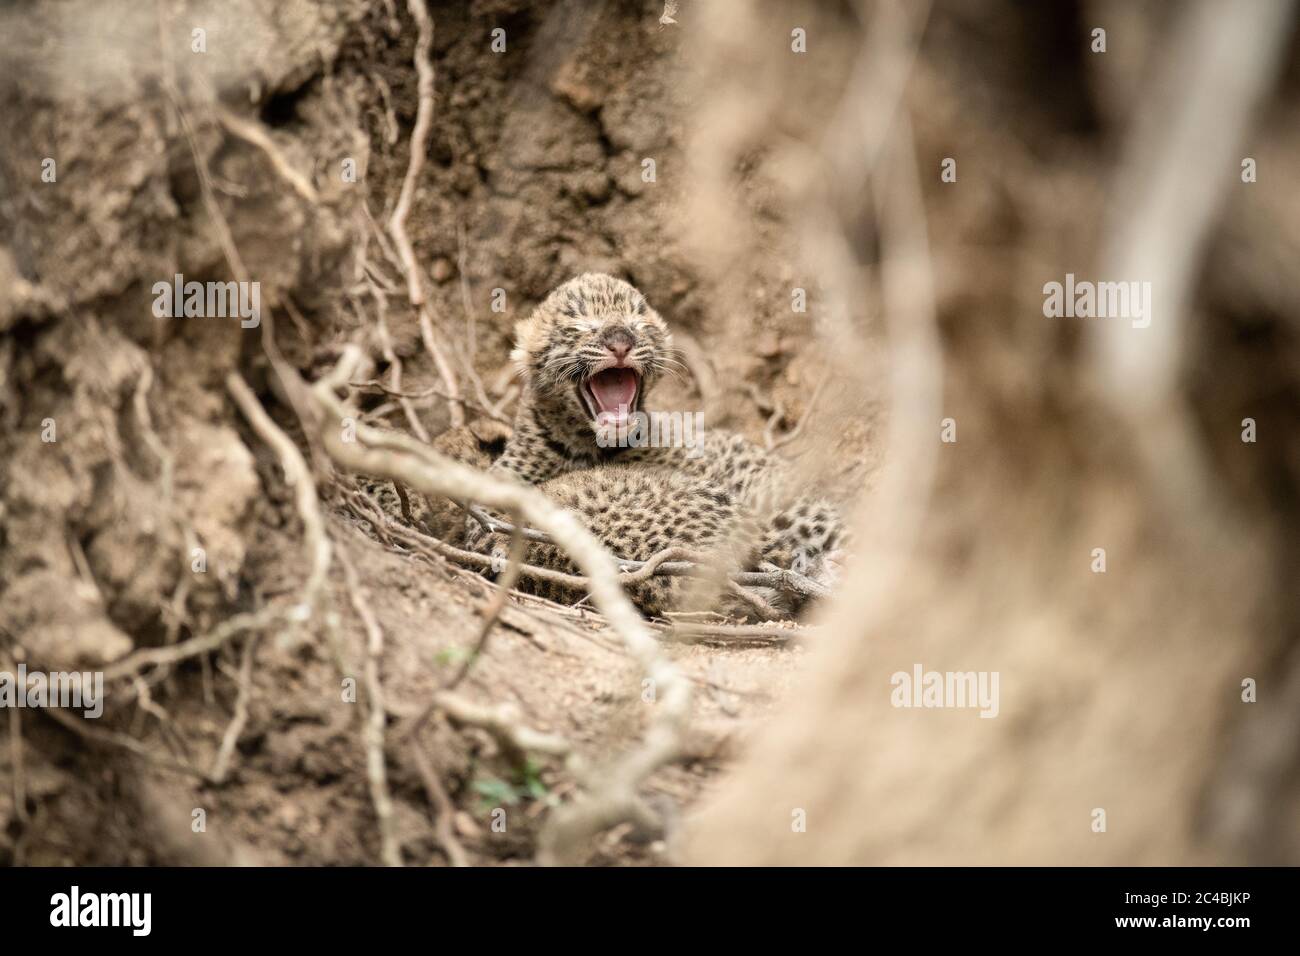 Les petits léopards nés récemment, Panthera pardus, se trouvent entre les racines et les parois de boue, un cub ouvre la bouche avec les yeux fermés Banque D'Images